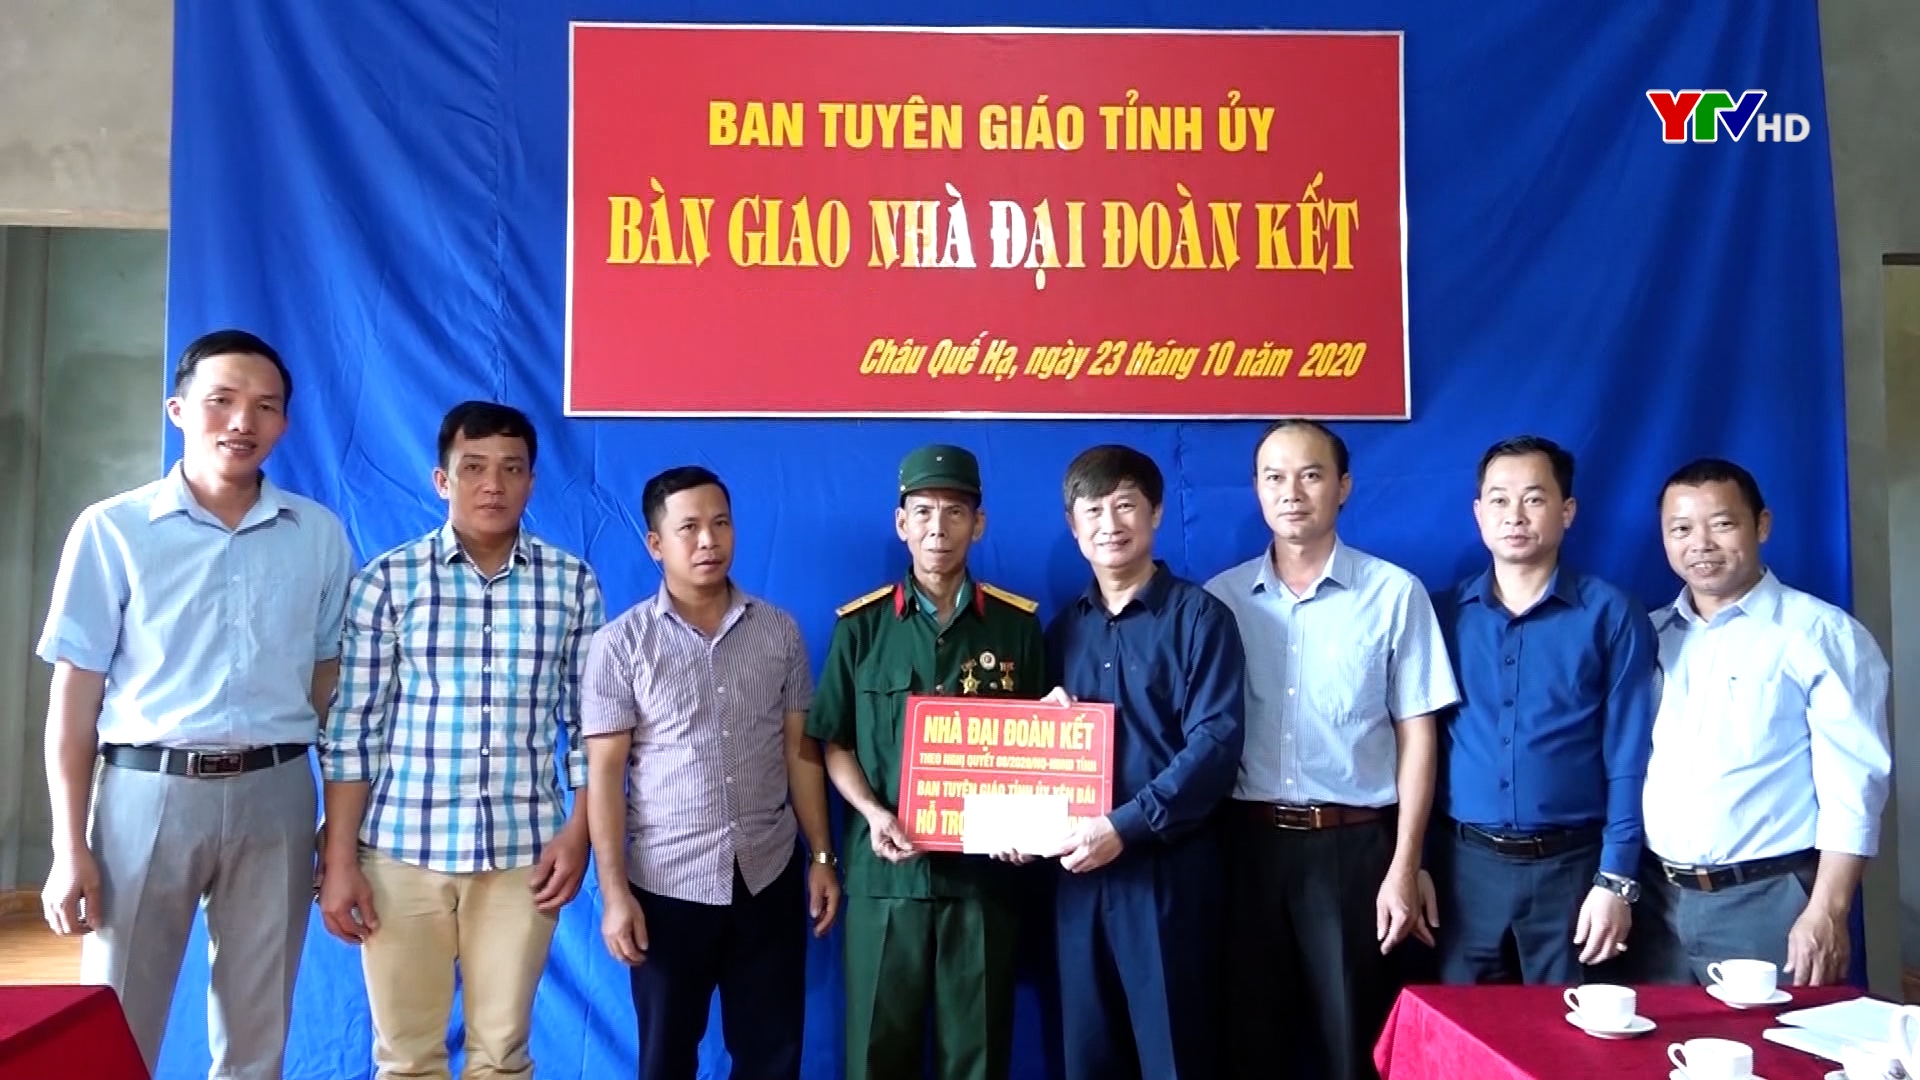 Ban Tuyên giáo Tỉnh ủy trao nhà đại đoàn kết tại huyện Văn Yên